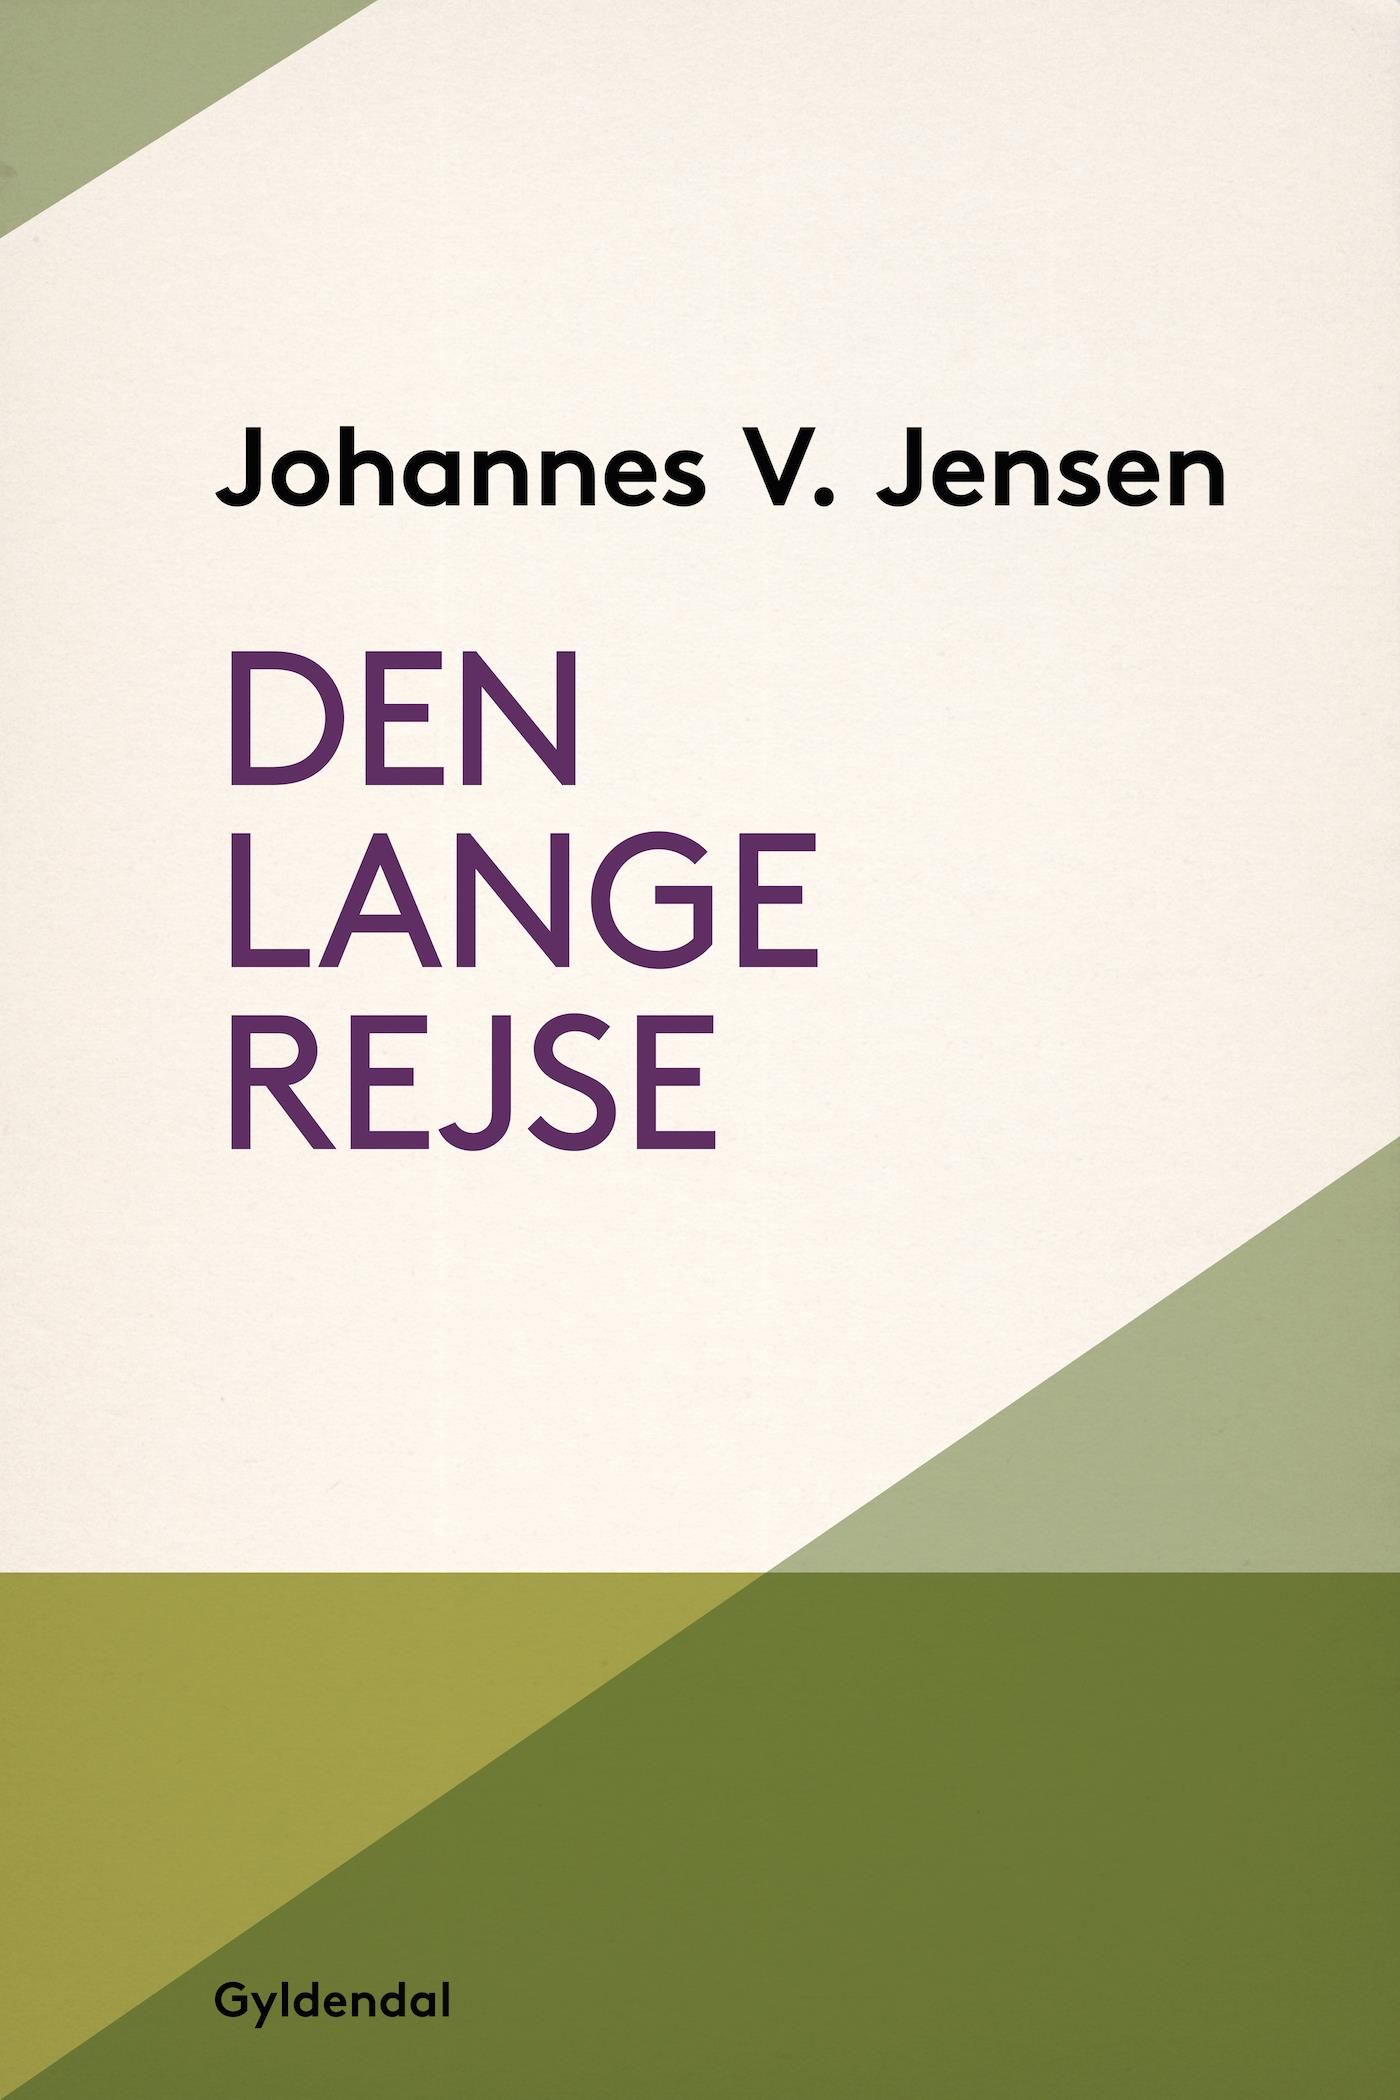 Den lange rejse, e-bog af Johannes V. Jensen